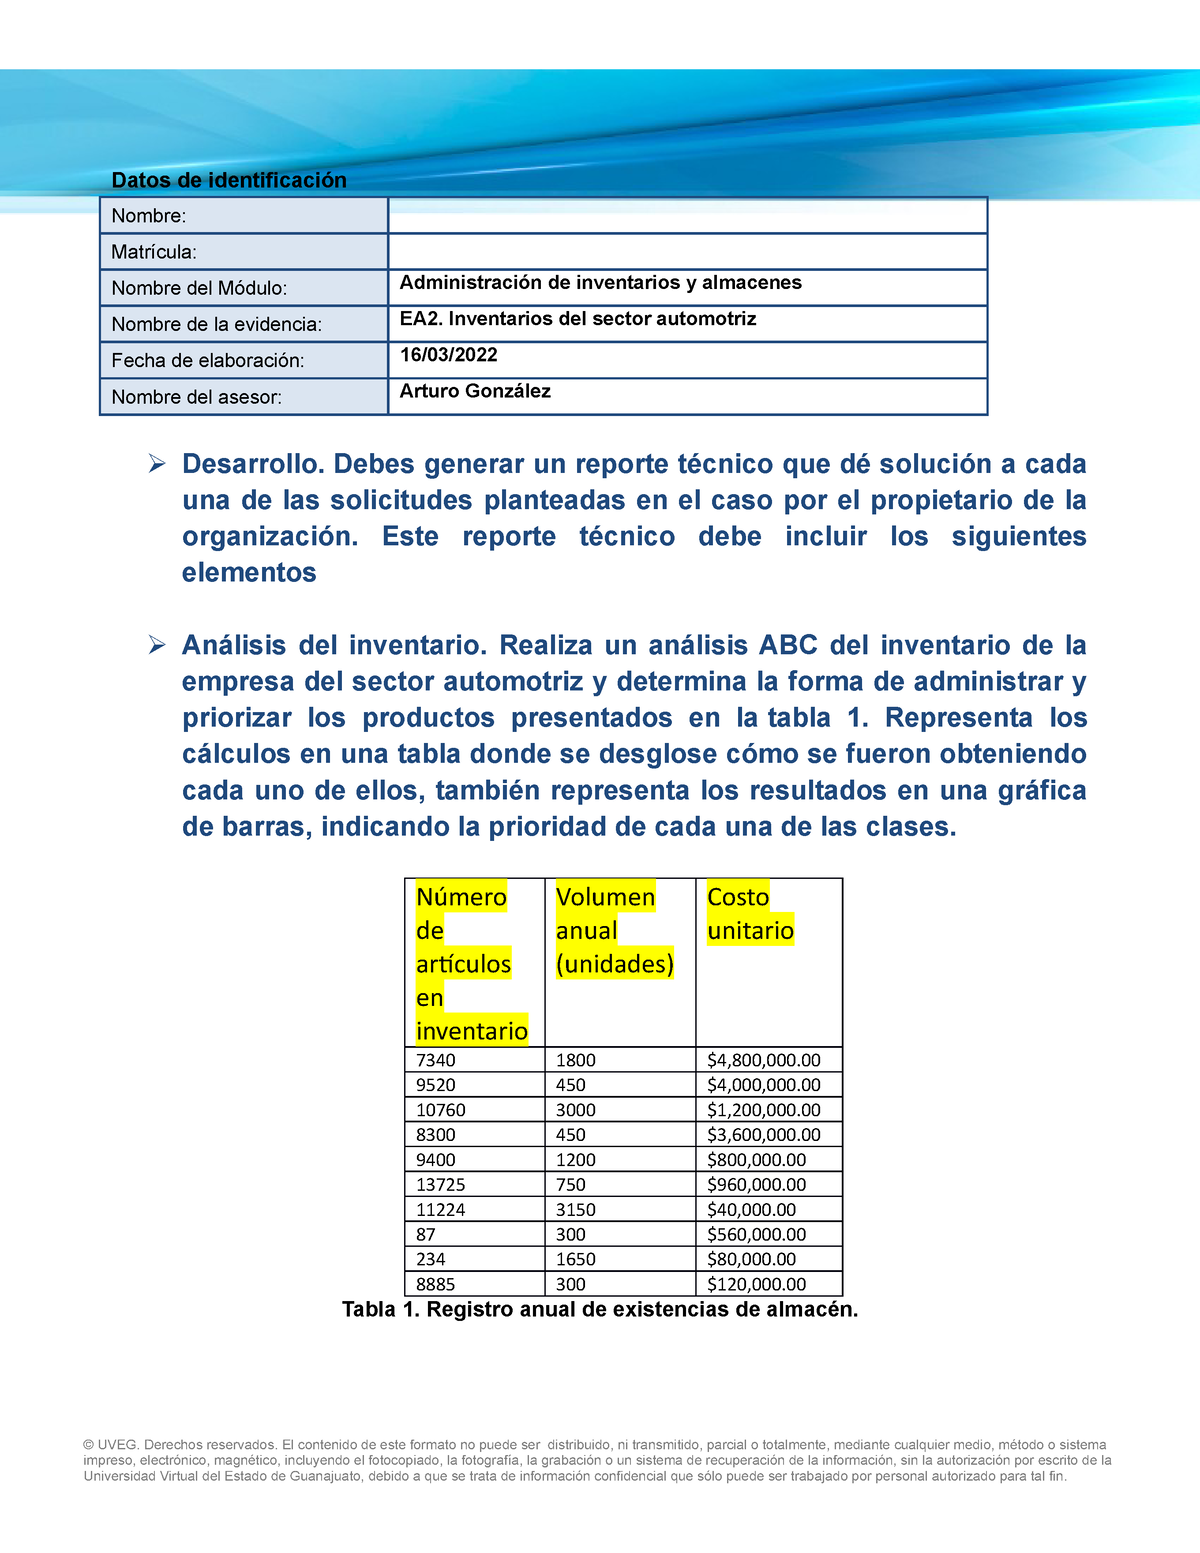 Ea2 Inventarios Del Sector Automotriz Datos De Identificación Nombre Matrícula Nombre Del 7562